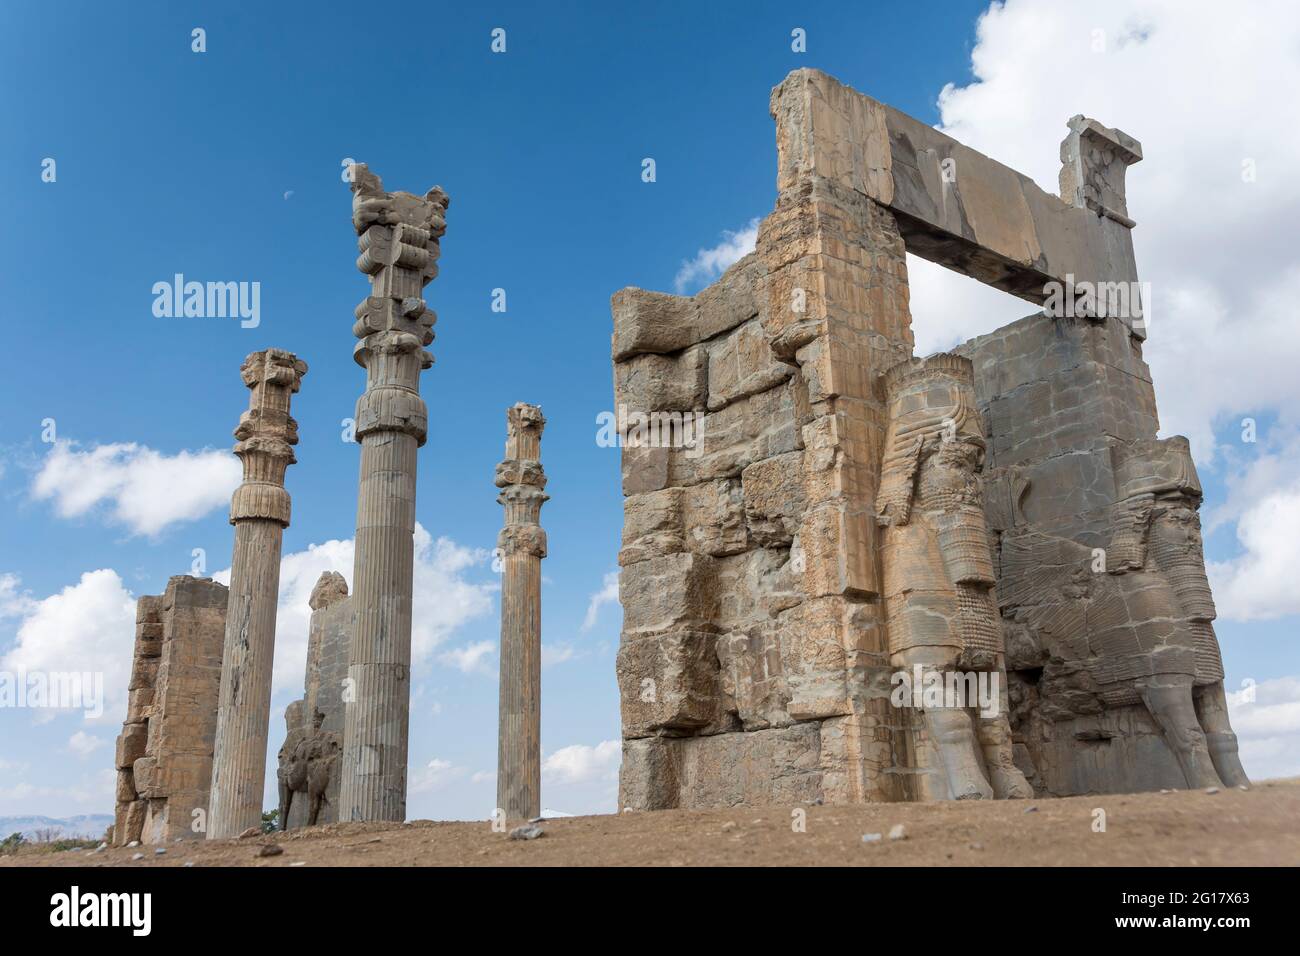 Ruines de la porte de toutes les nations (porte de Xerxès), Persepolis, province de Fars, Iran Banque D'Images